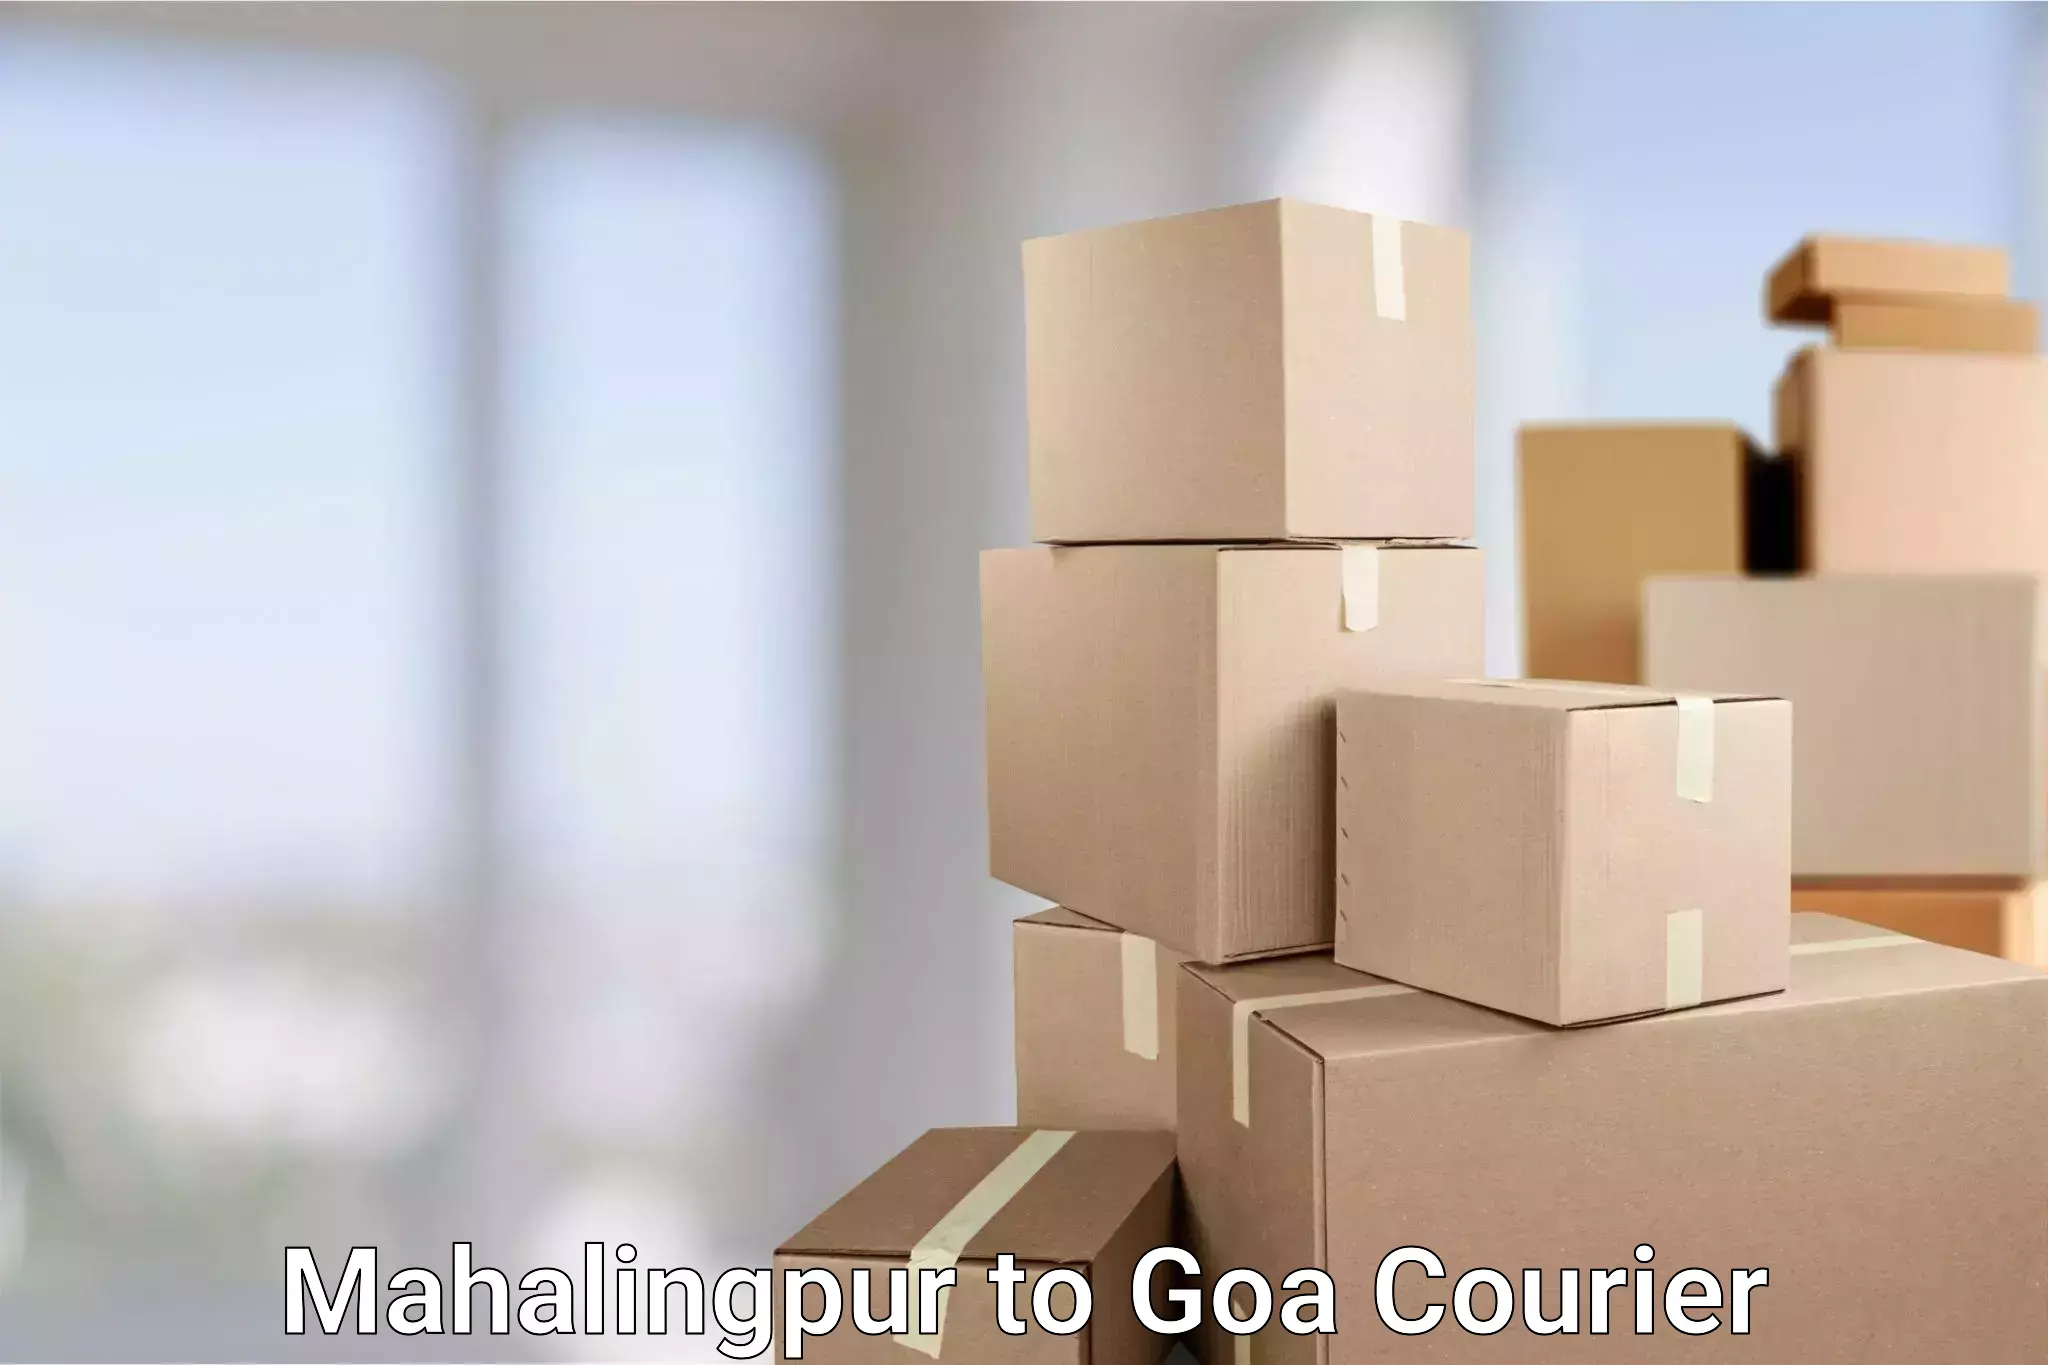 Premium courier services Mahalingpur to Bicholim